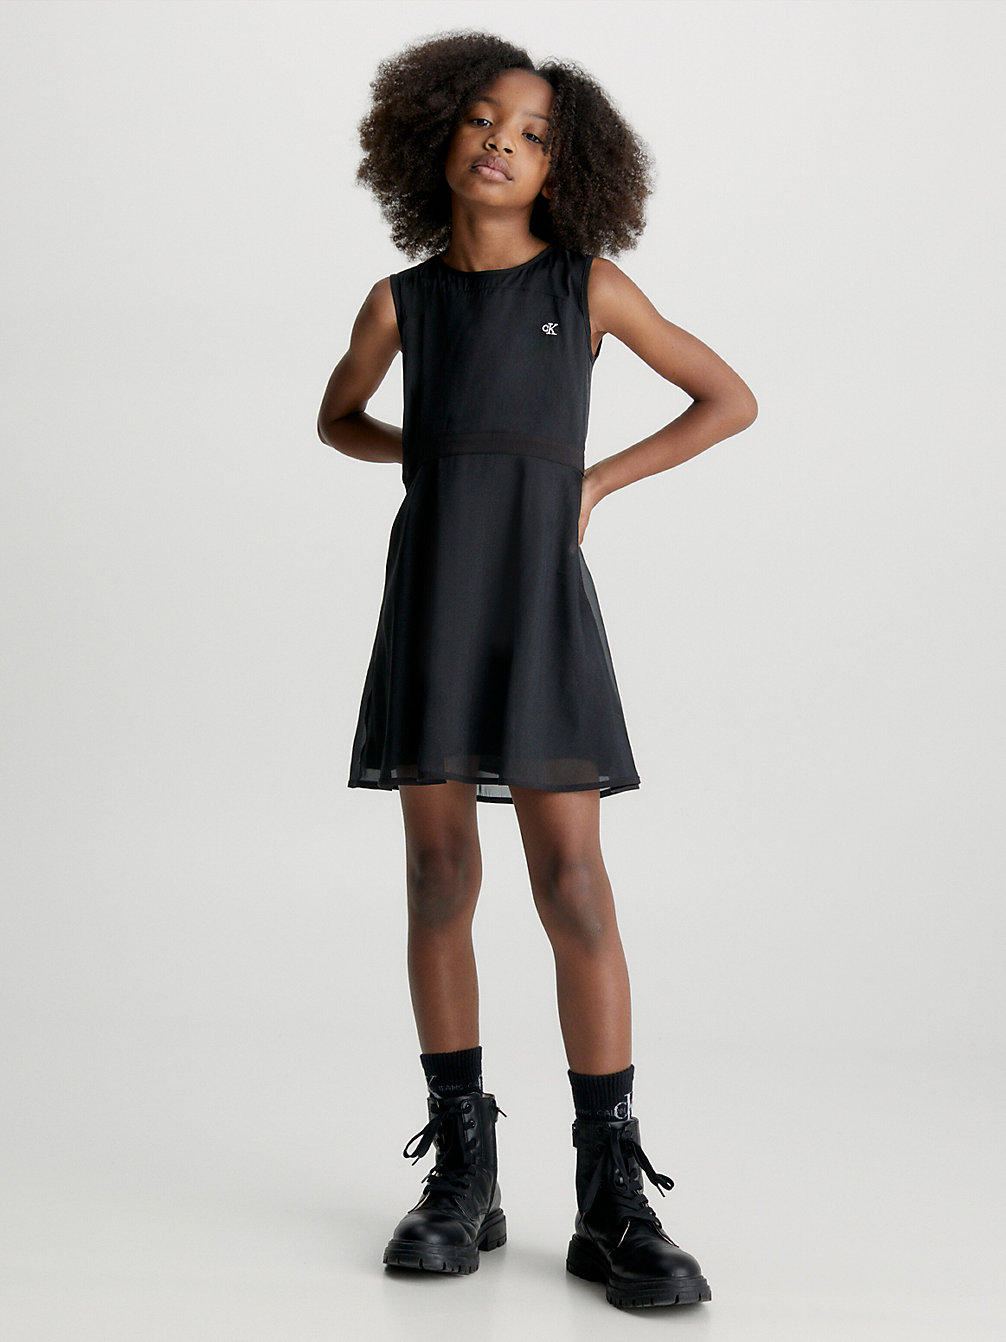 CK BLACK Layered Chiffon Occasion Dress undefined girls Calvin Klein